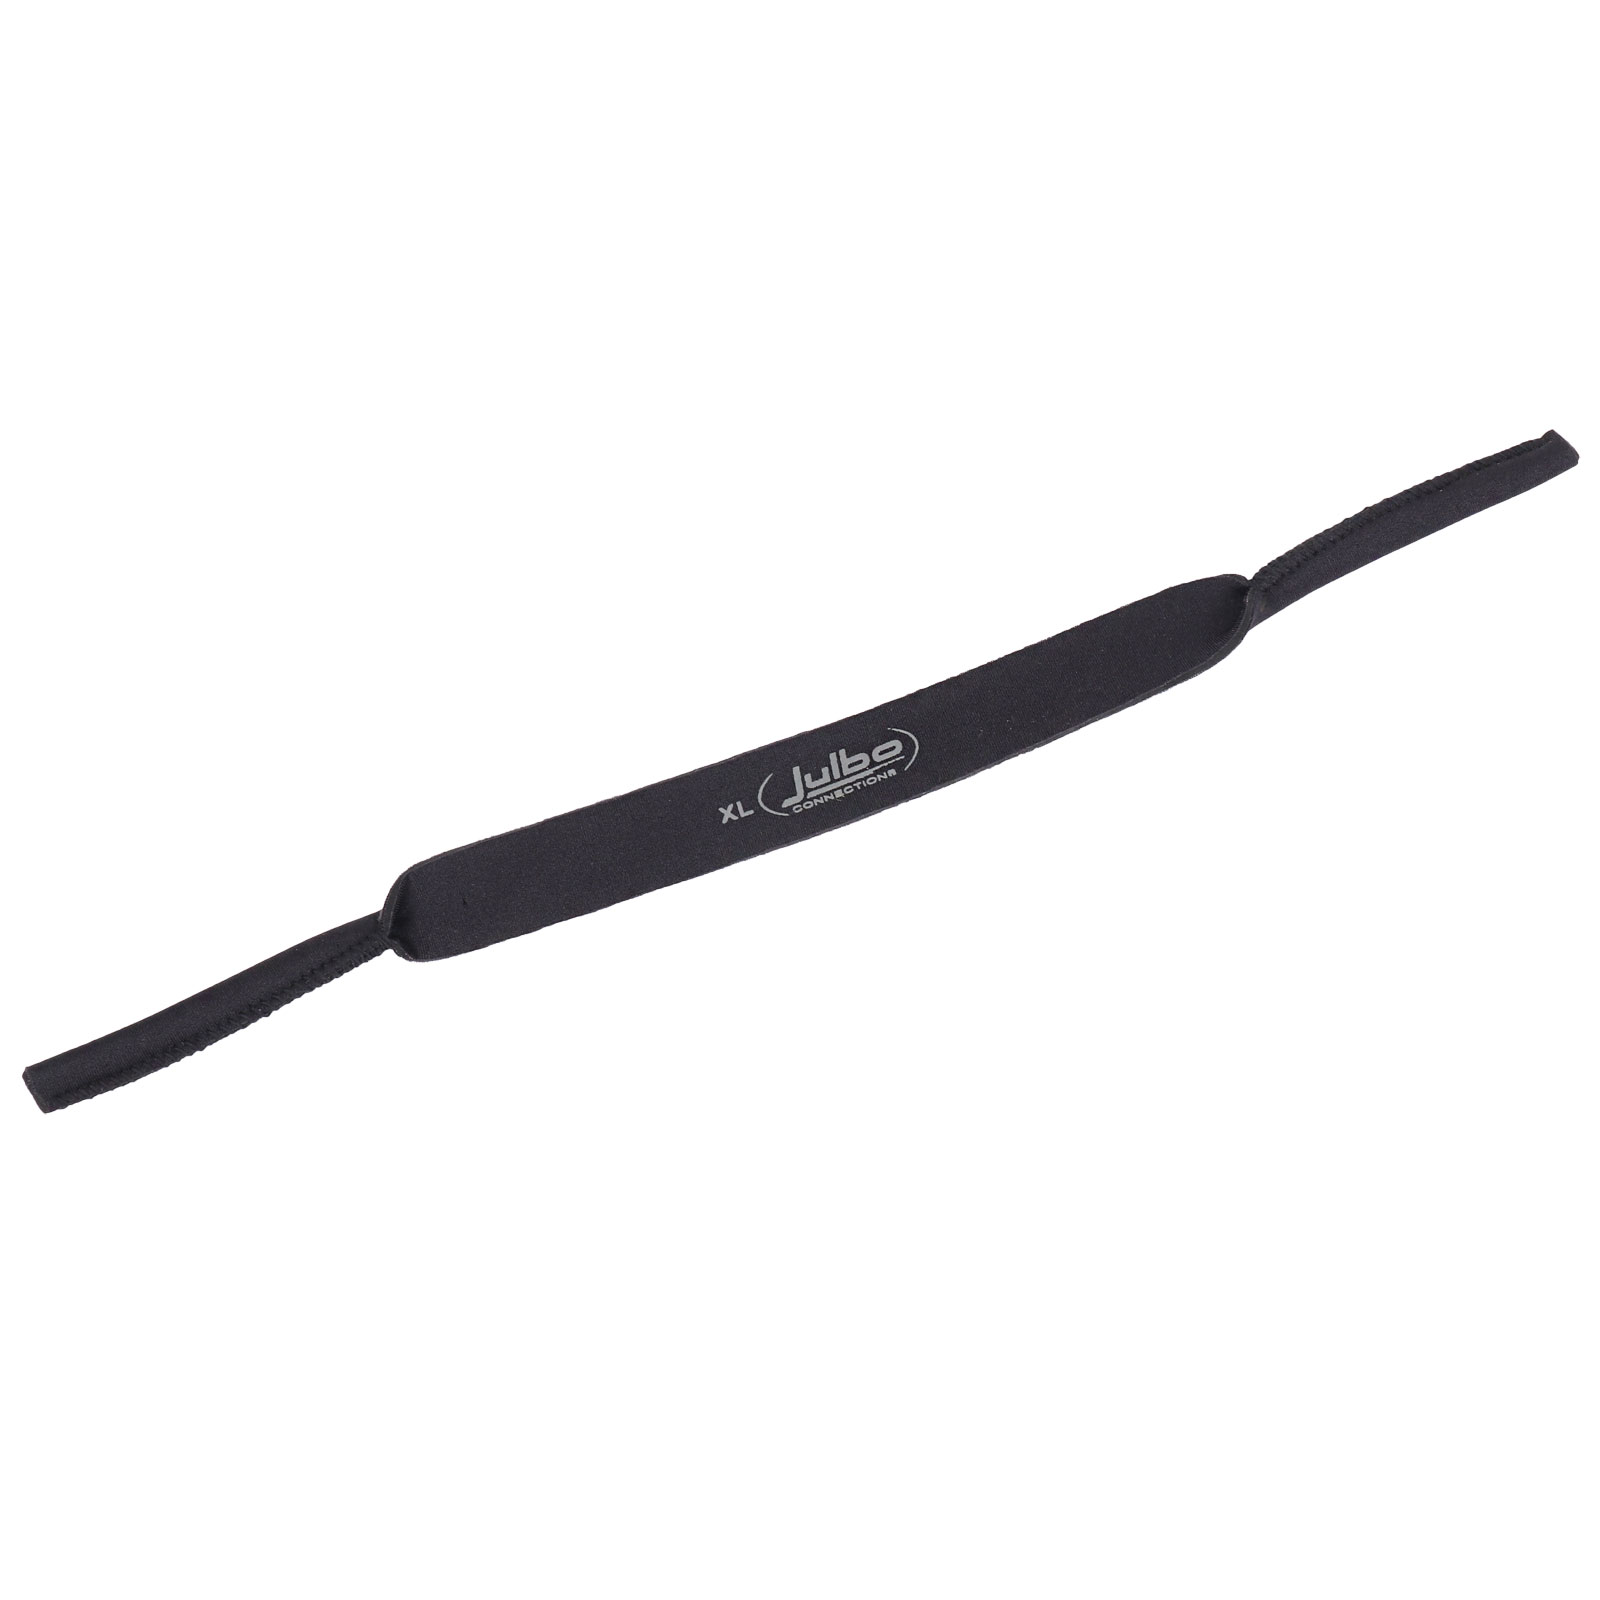 Productfoto van Julbo Neopren Strap For Glasses - XL - black